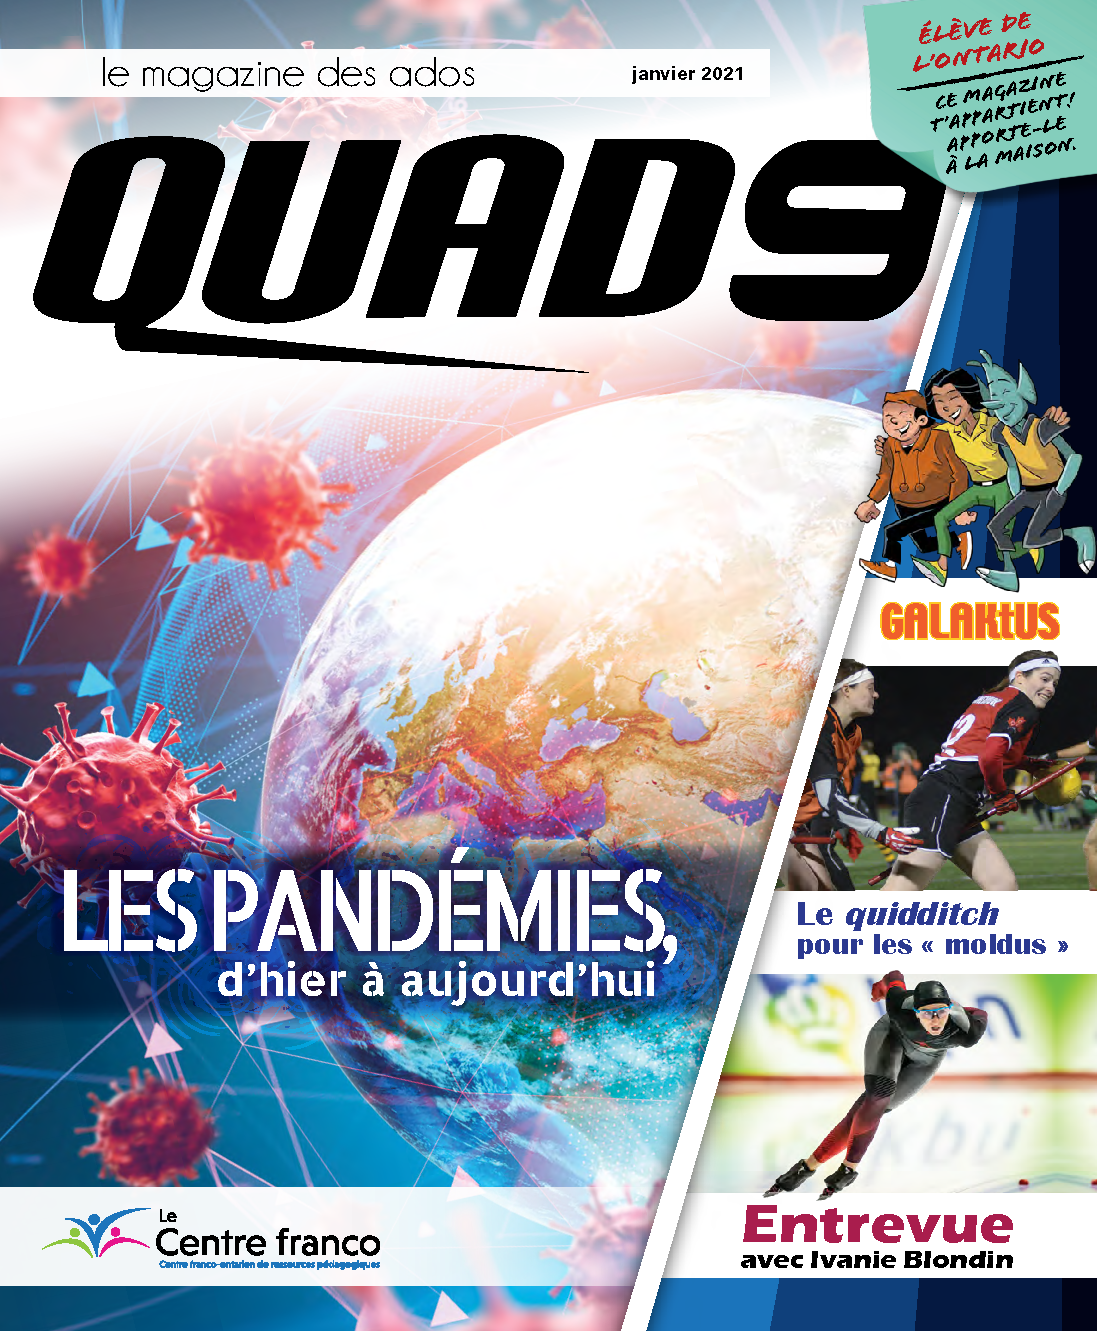 Accéder à la fiche du magazine QUAD9 volume 16 numéro 1.